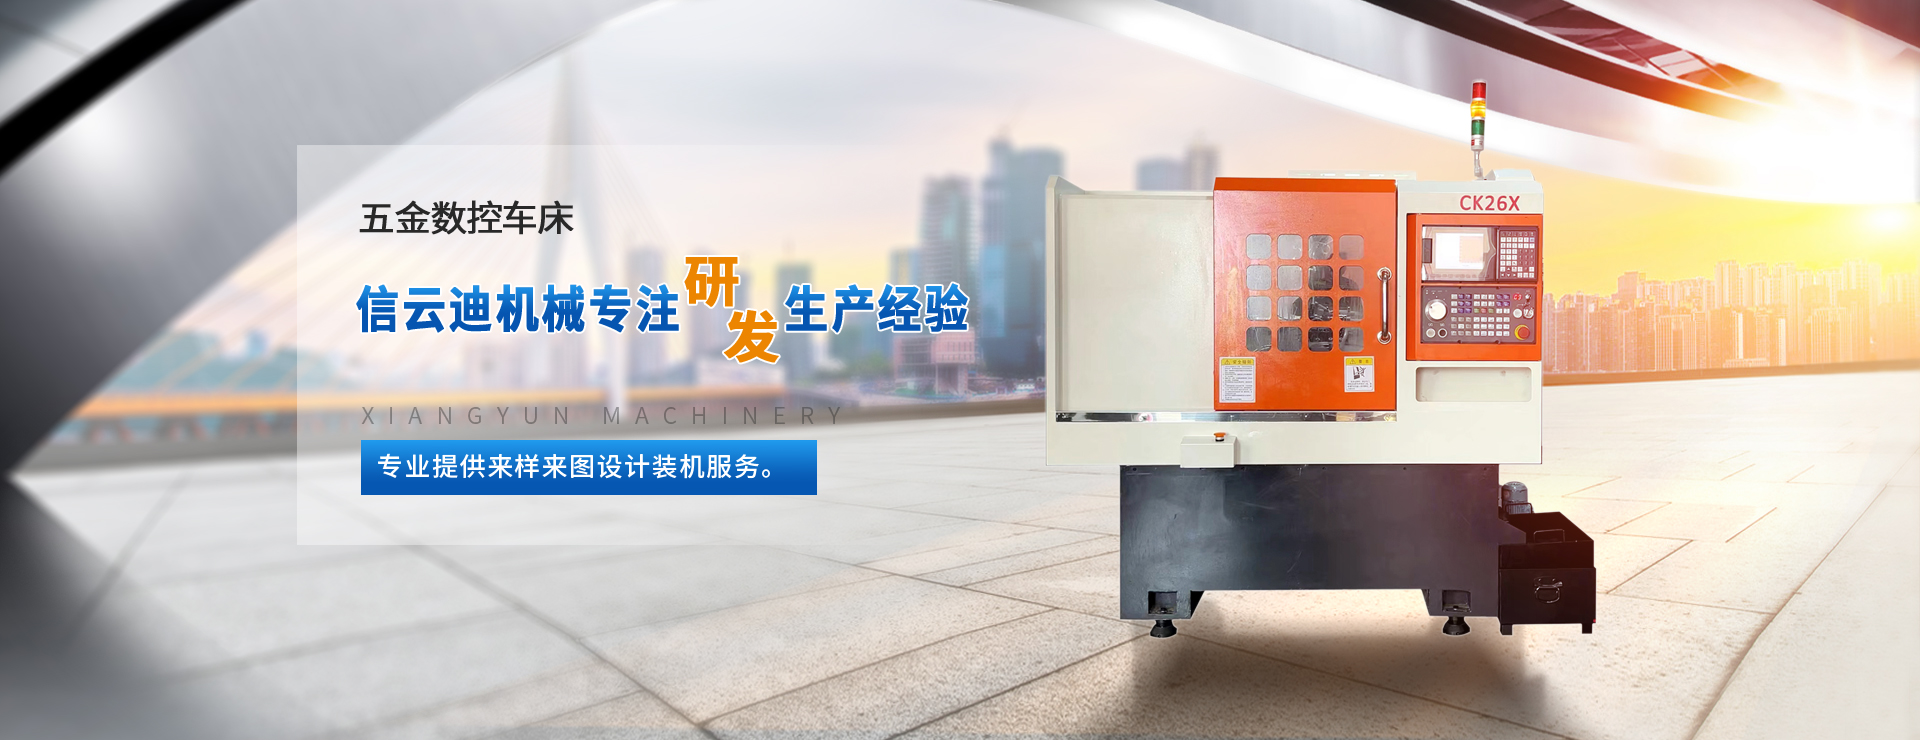 广东数控车床 液压自动化设备 门窗滑轮车床